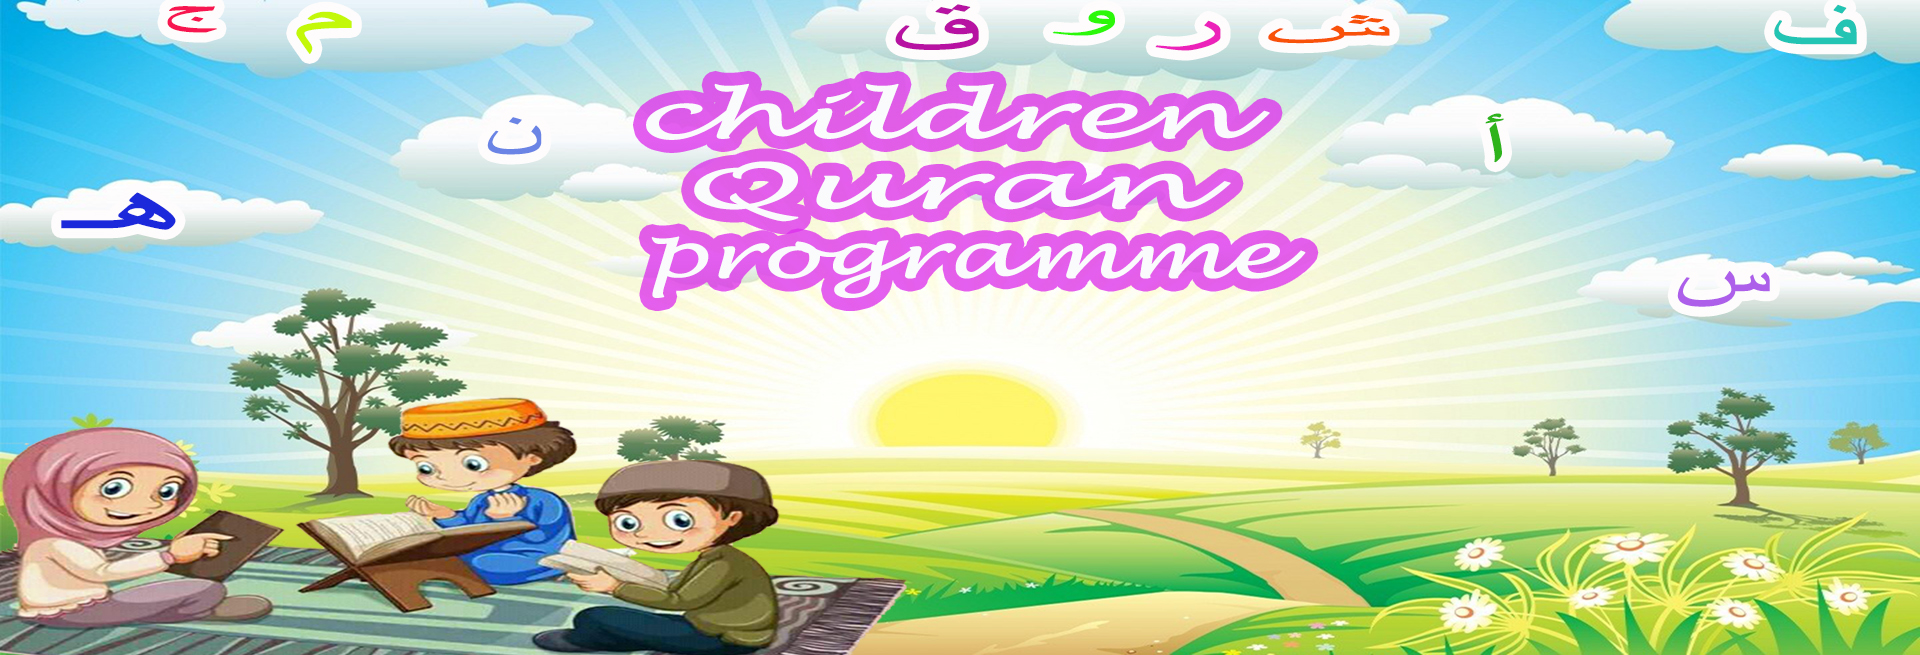 Quran Program for Children